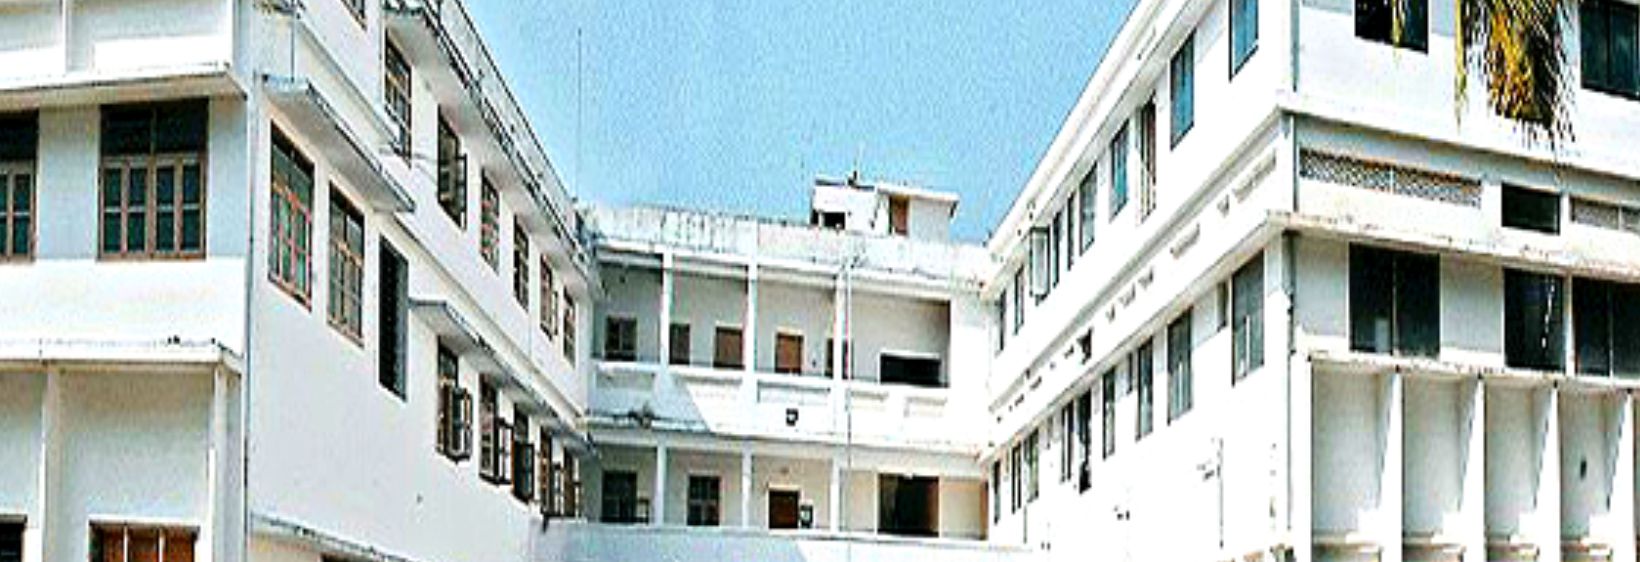 K Pandyarajah Ballal Nursing Institute - Mangalore, Dakshina Kannada